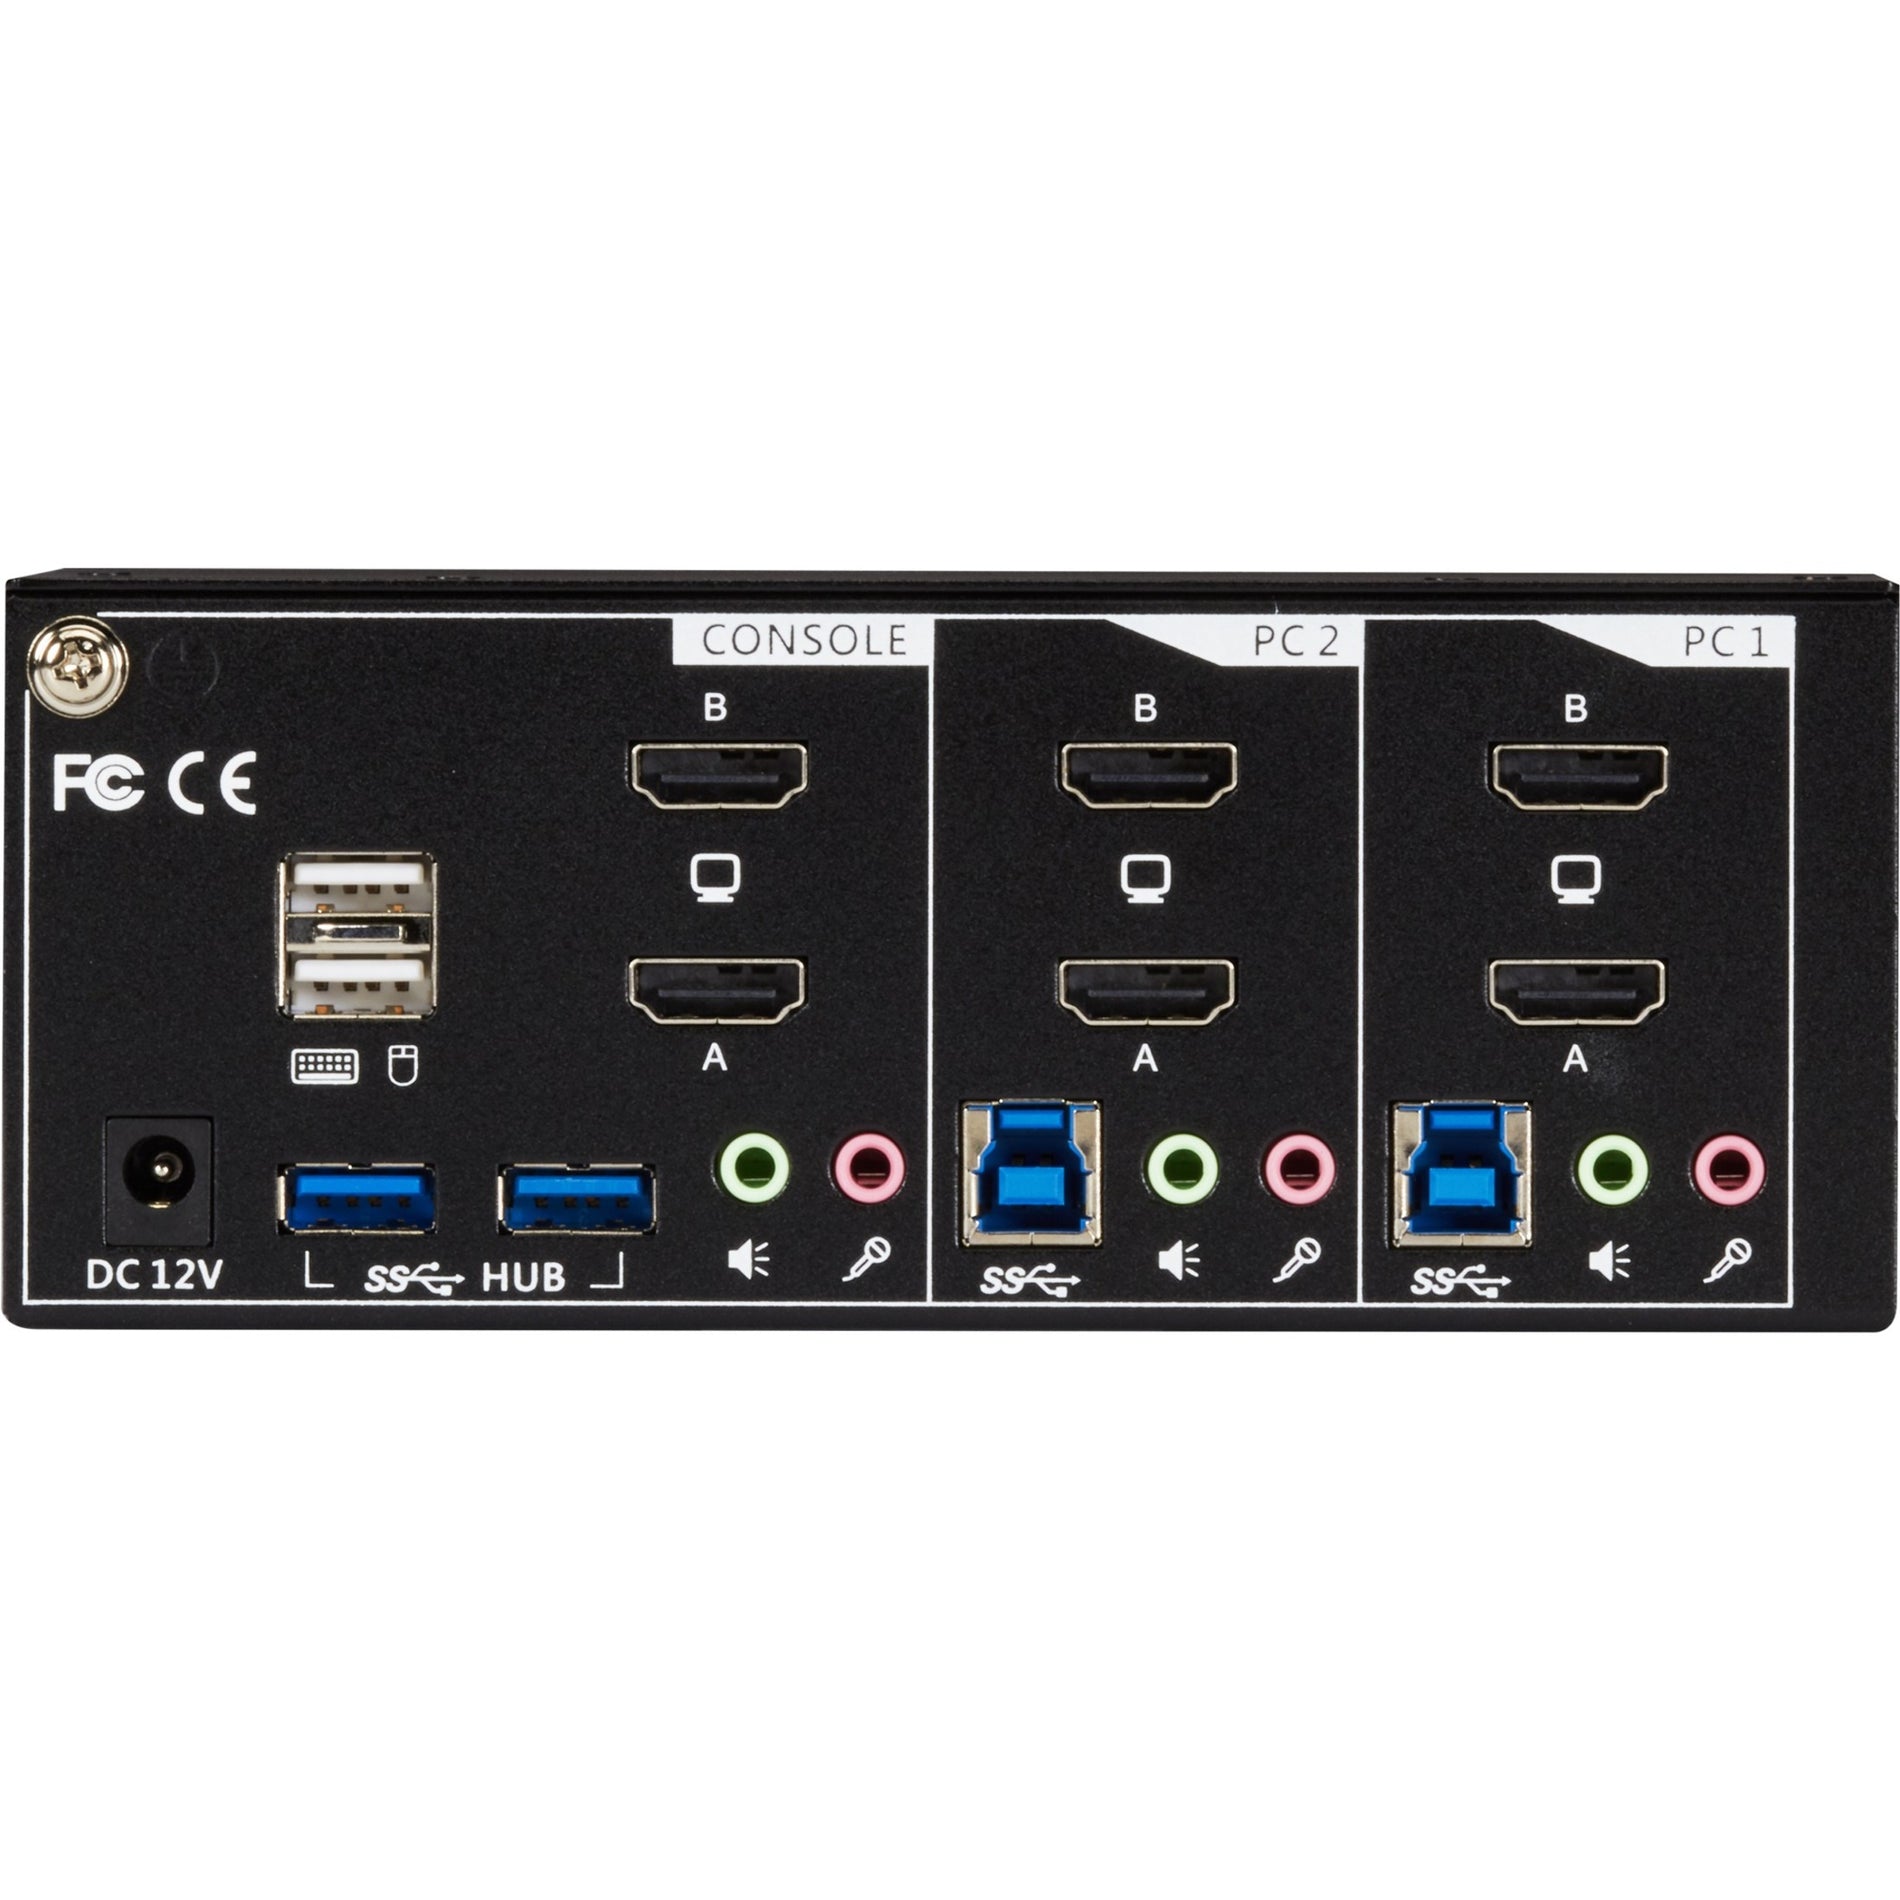 جهاز التبديل KV6222H KVM من Black Box - 2 منفذ، شاشتان، HDMI 2.0، 4K 60 هرتز، USB 3.0 هاب، صوت، مشاركة شاشتان 4K مع جهازي كمبيوتر Black Box